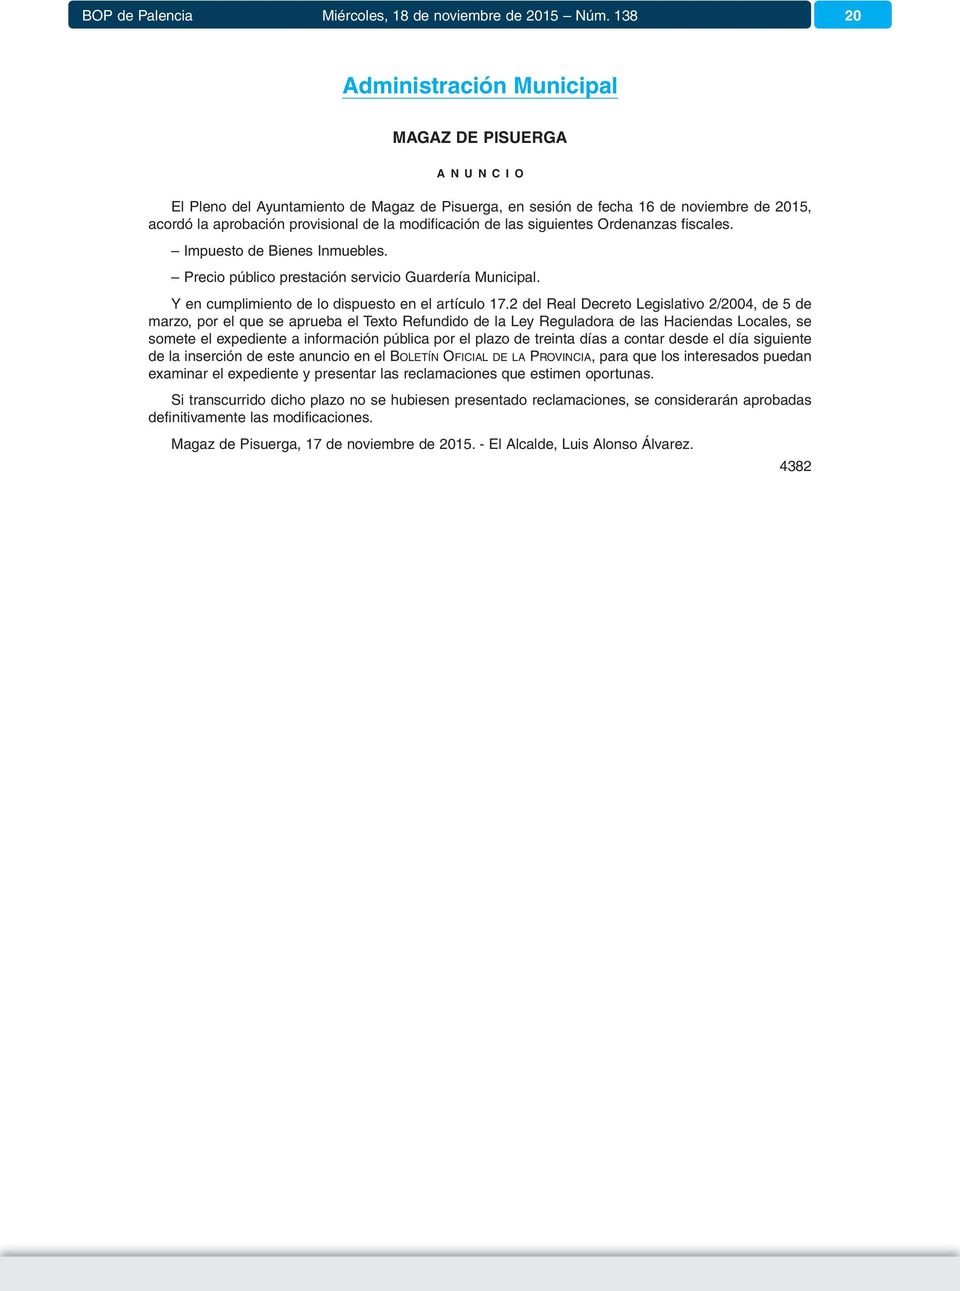 2 del Real Decreto Legislativo 2/2004, de 5 de marzo, por el que se aprueba el Texto Refundido de la Ley Reguladora de las Haciendas Locales, se somete el expediente a información pública por el